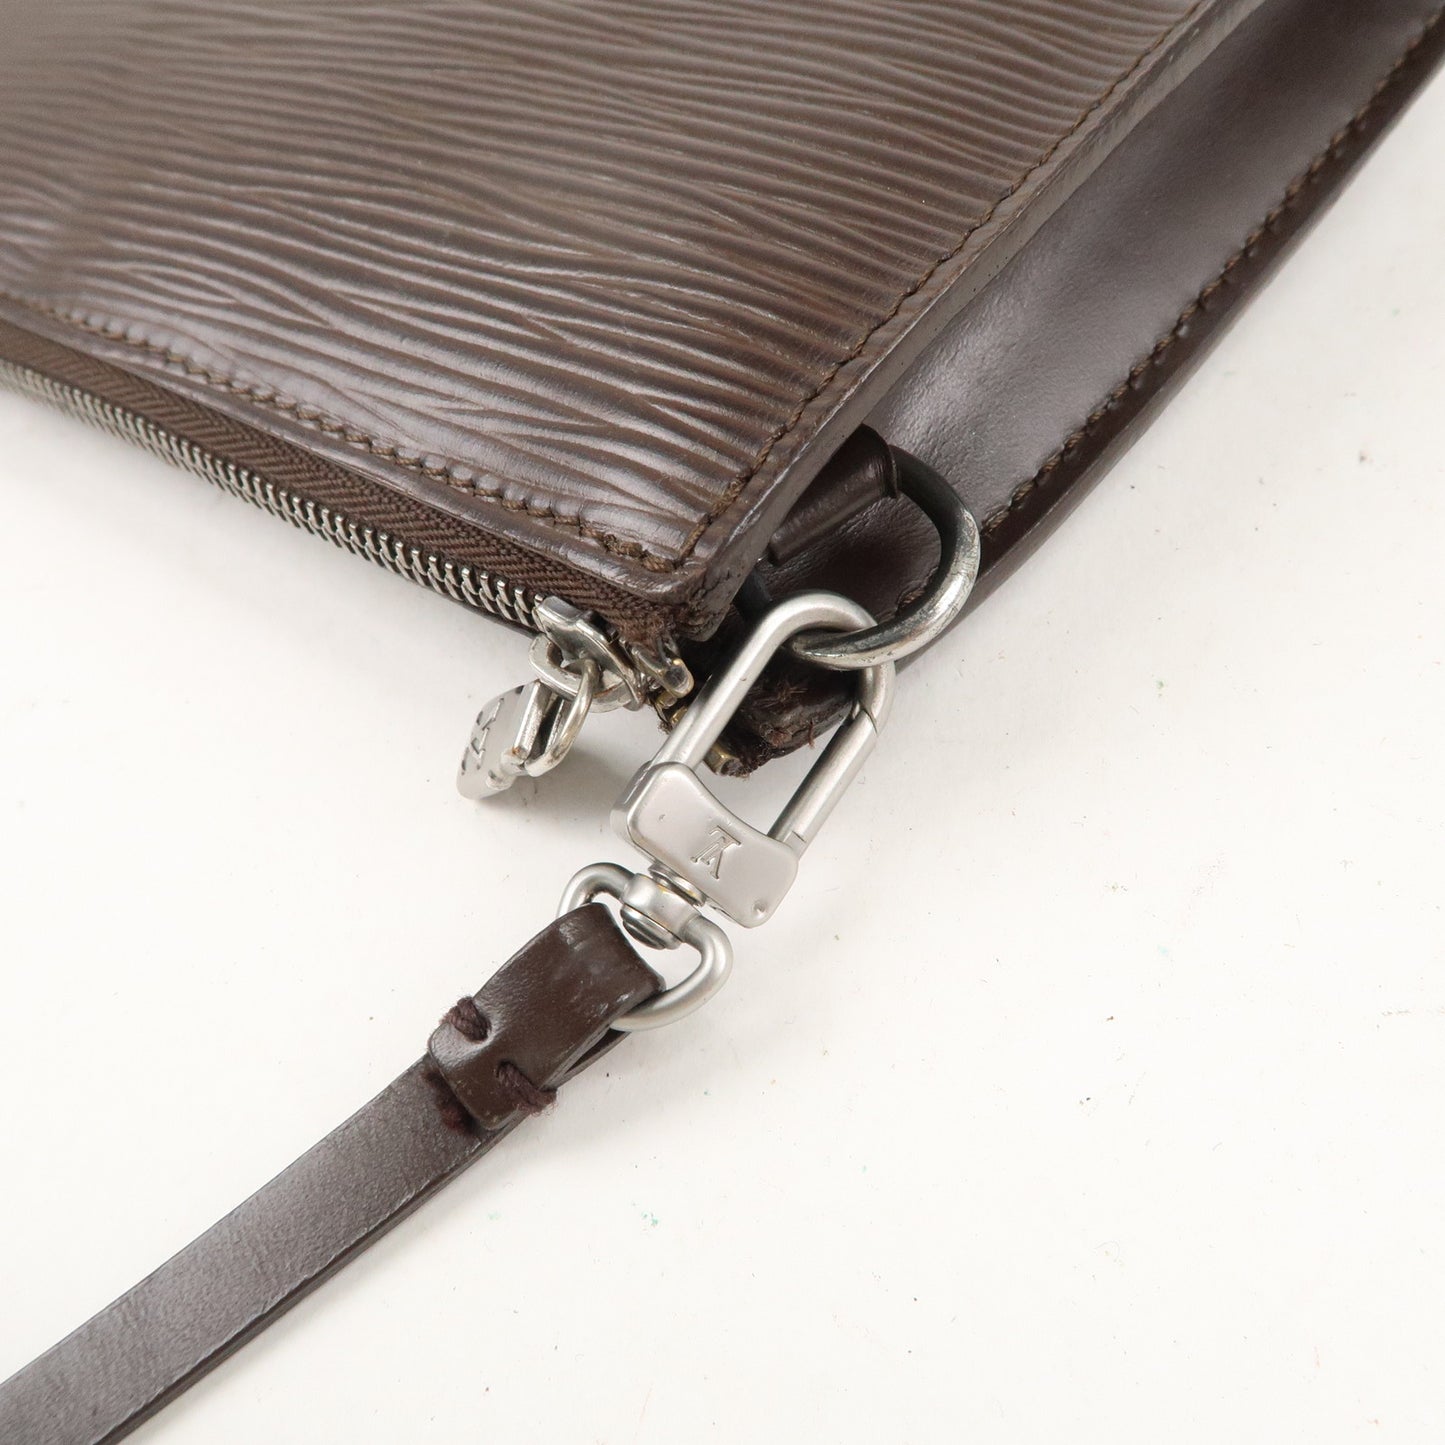 Louis Vuitton Epi Pochette Accessoires Hand Bag Mocha M5294D